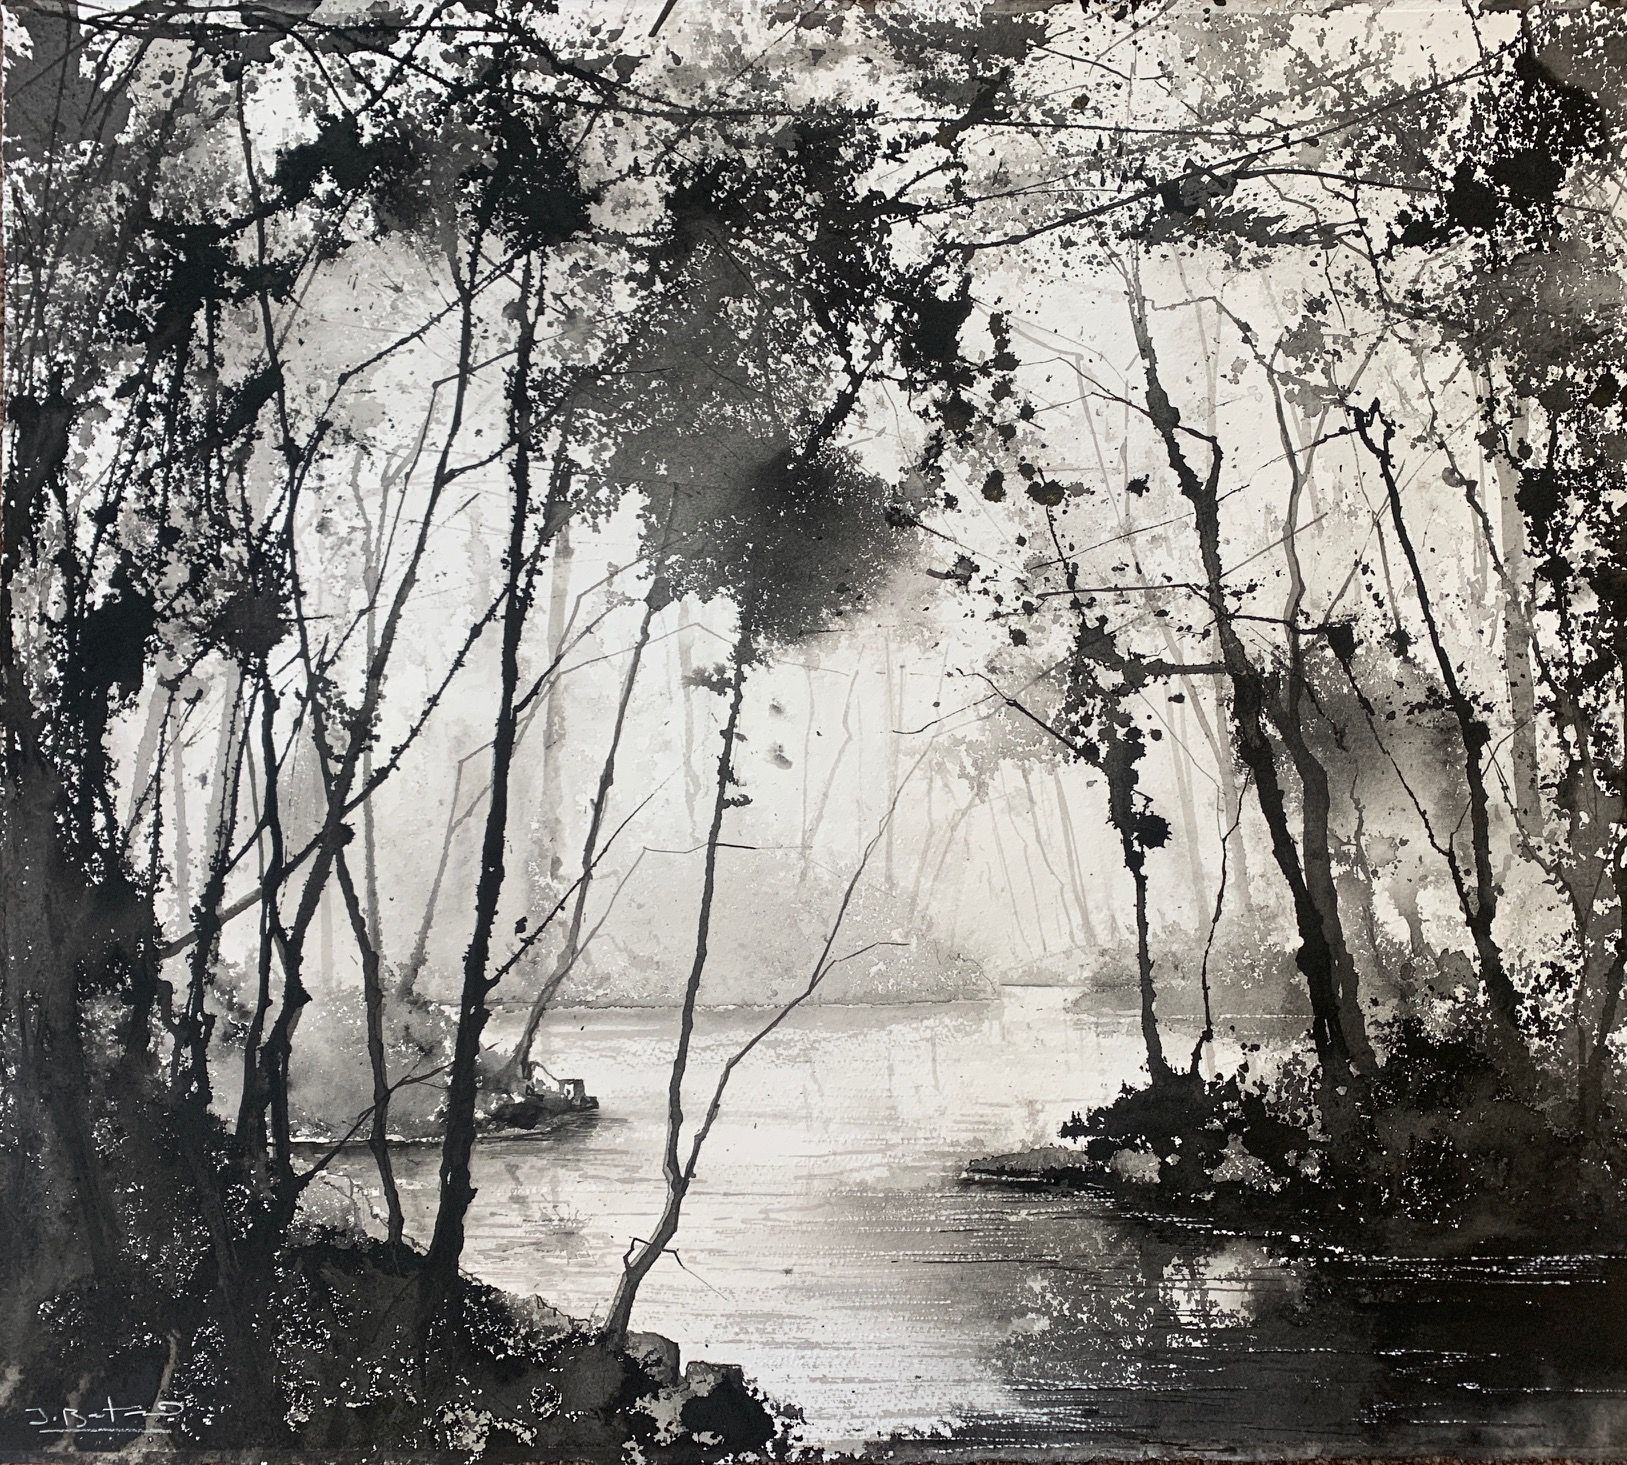 River Dart Meander I by James Bonstow